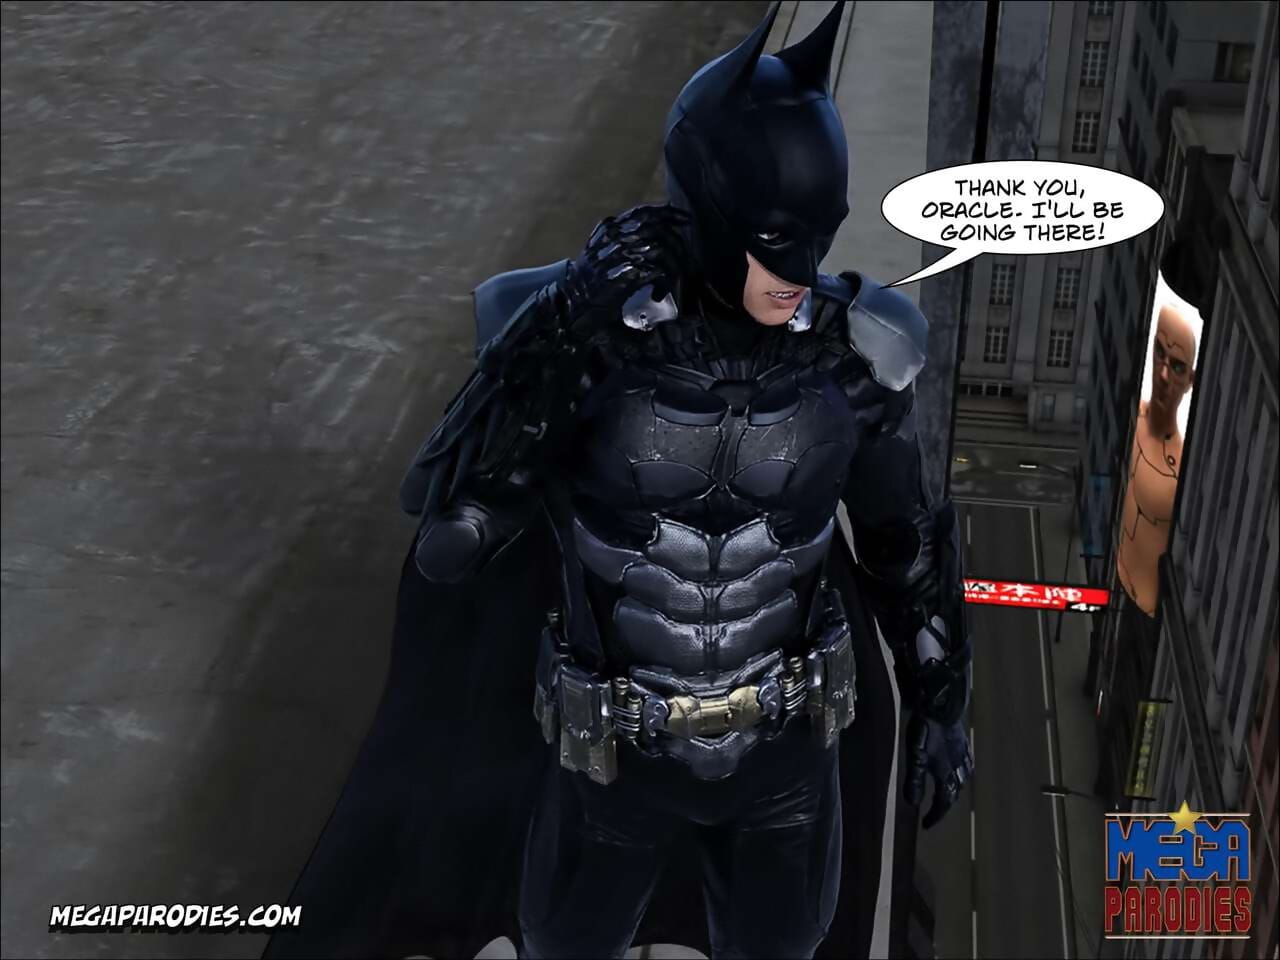 Mega parodieën strips collectie batman page 1